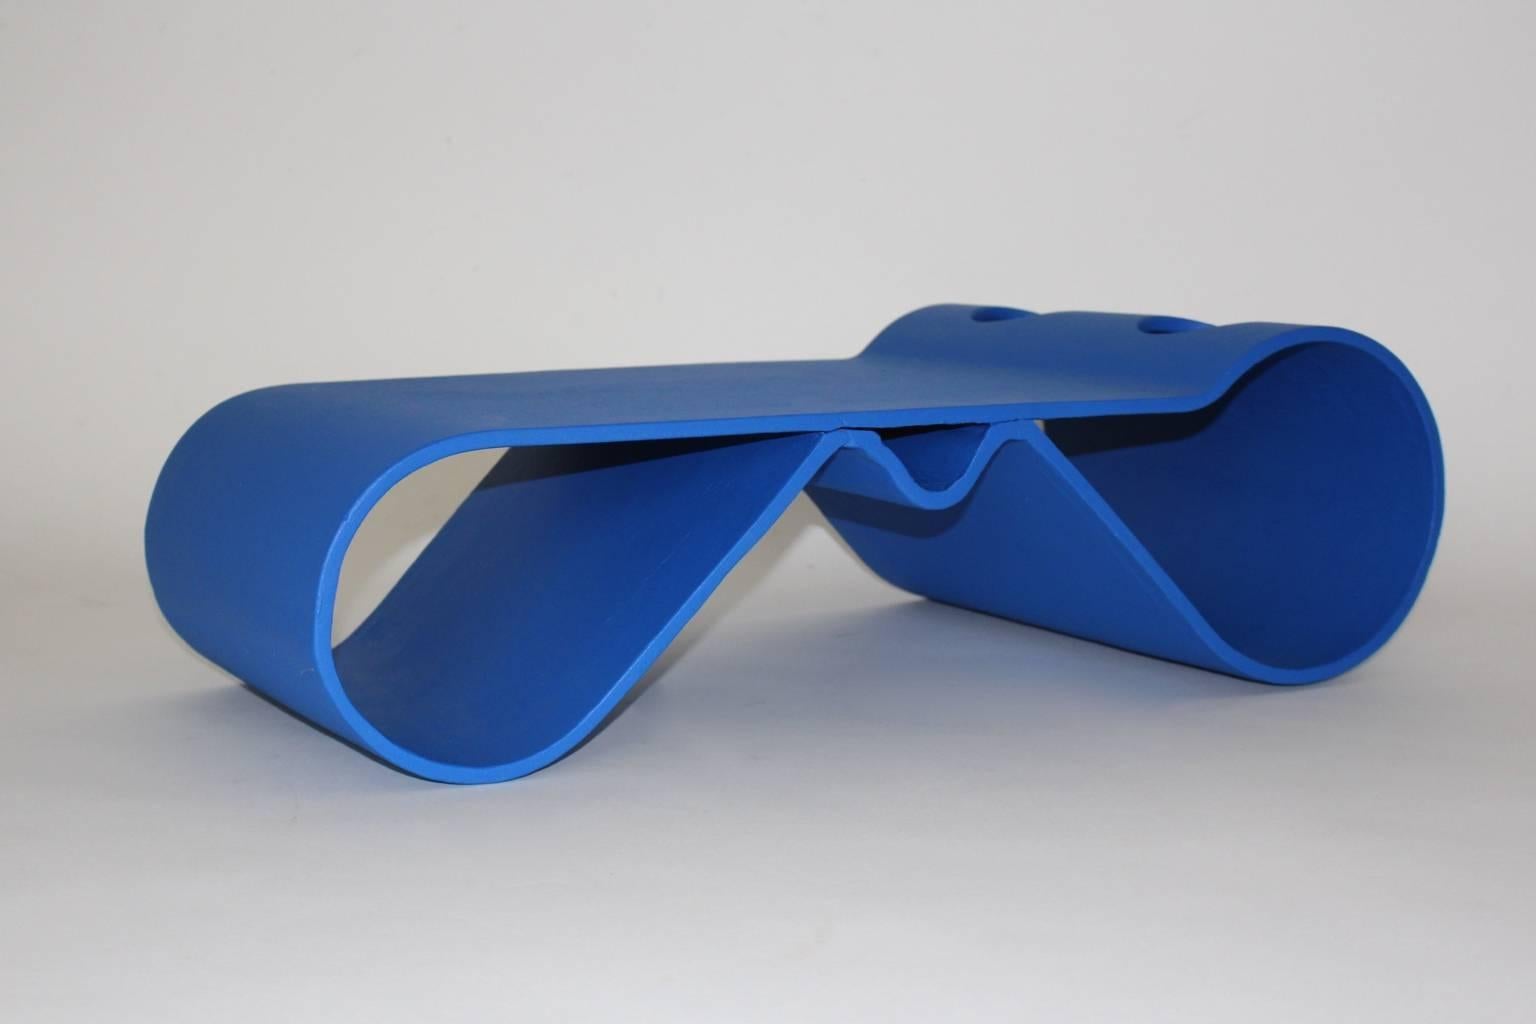 Table basse Loop bleue moderne et vintage de Willy Guhl (1915-2004).
Cette table basse convient parfaitement à l'intérieur et à l'extérieur, comme une belle table basse futuriste ou une table de canapé.
Cette table basse futuriste est fabriquée en